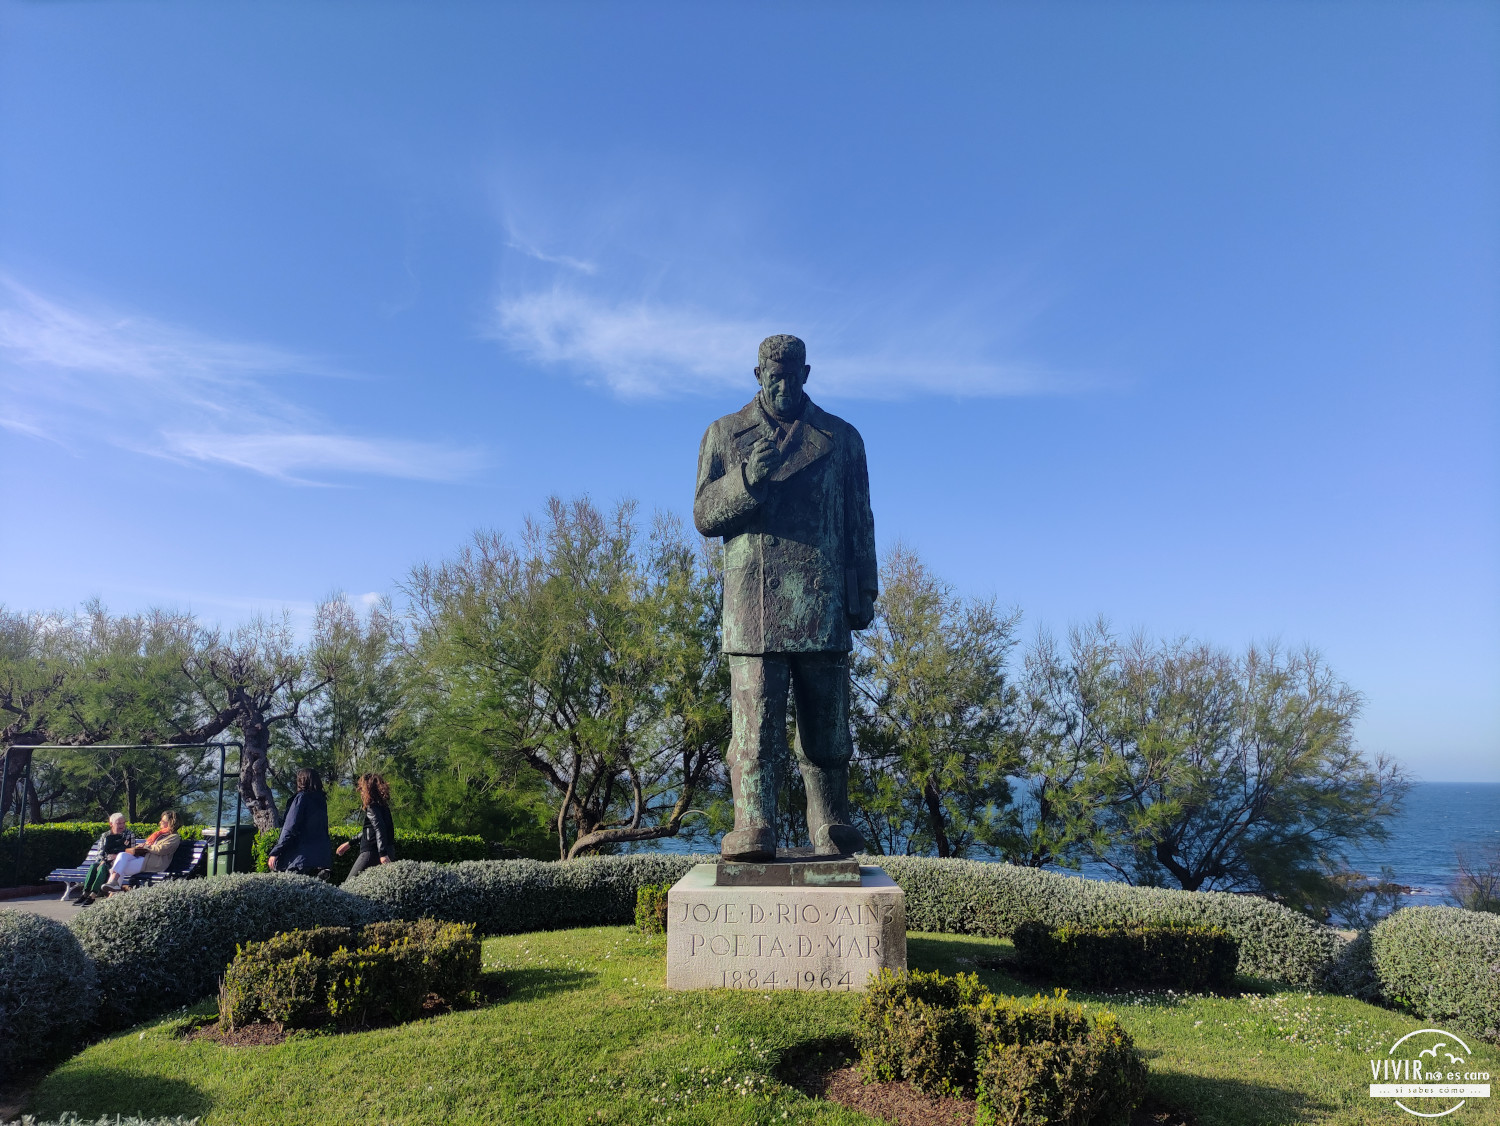 Escultura a José del Río Sainz (Poeta del Mar) en Santander